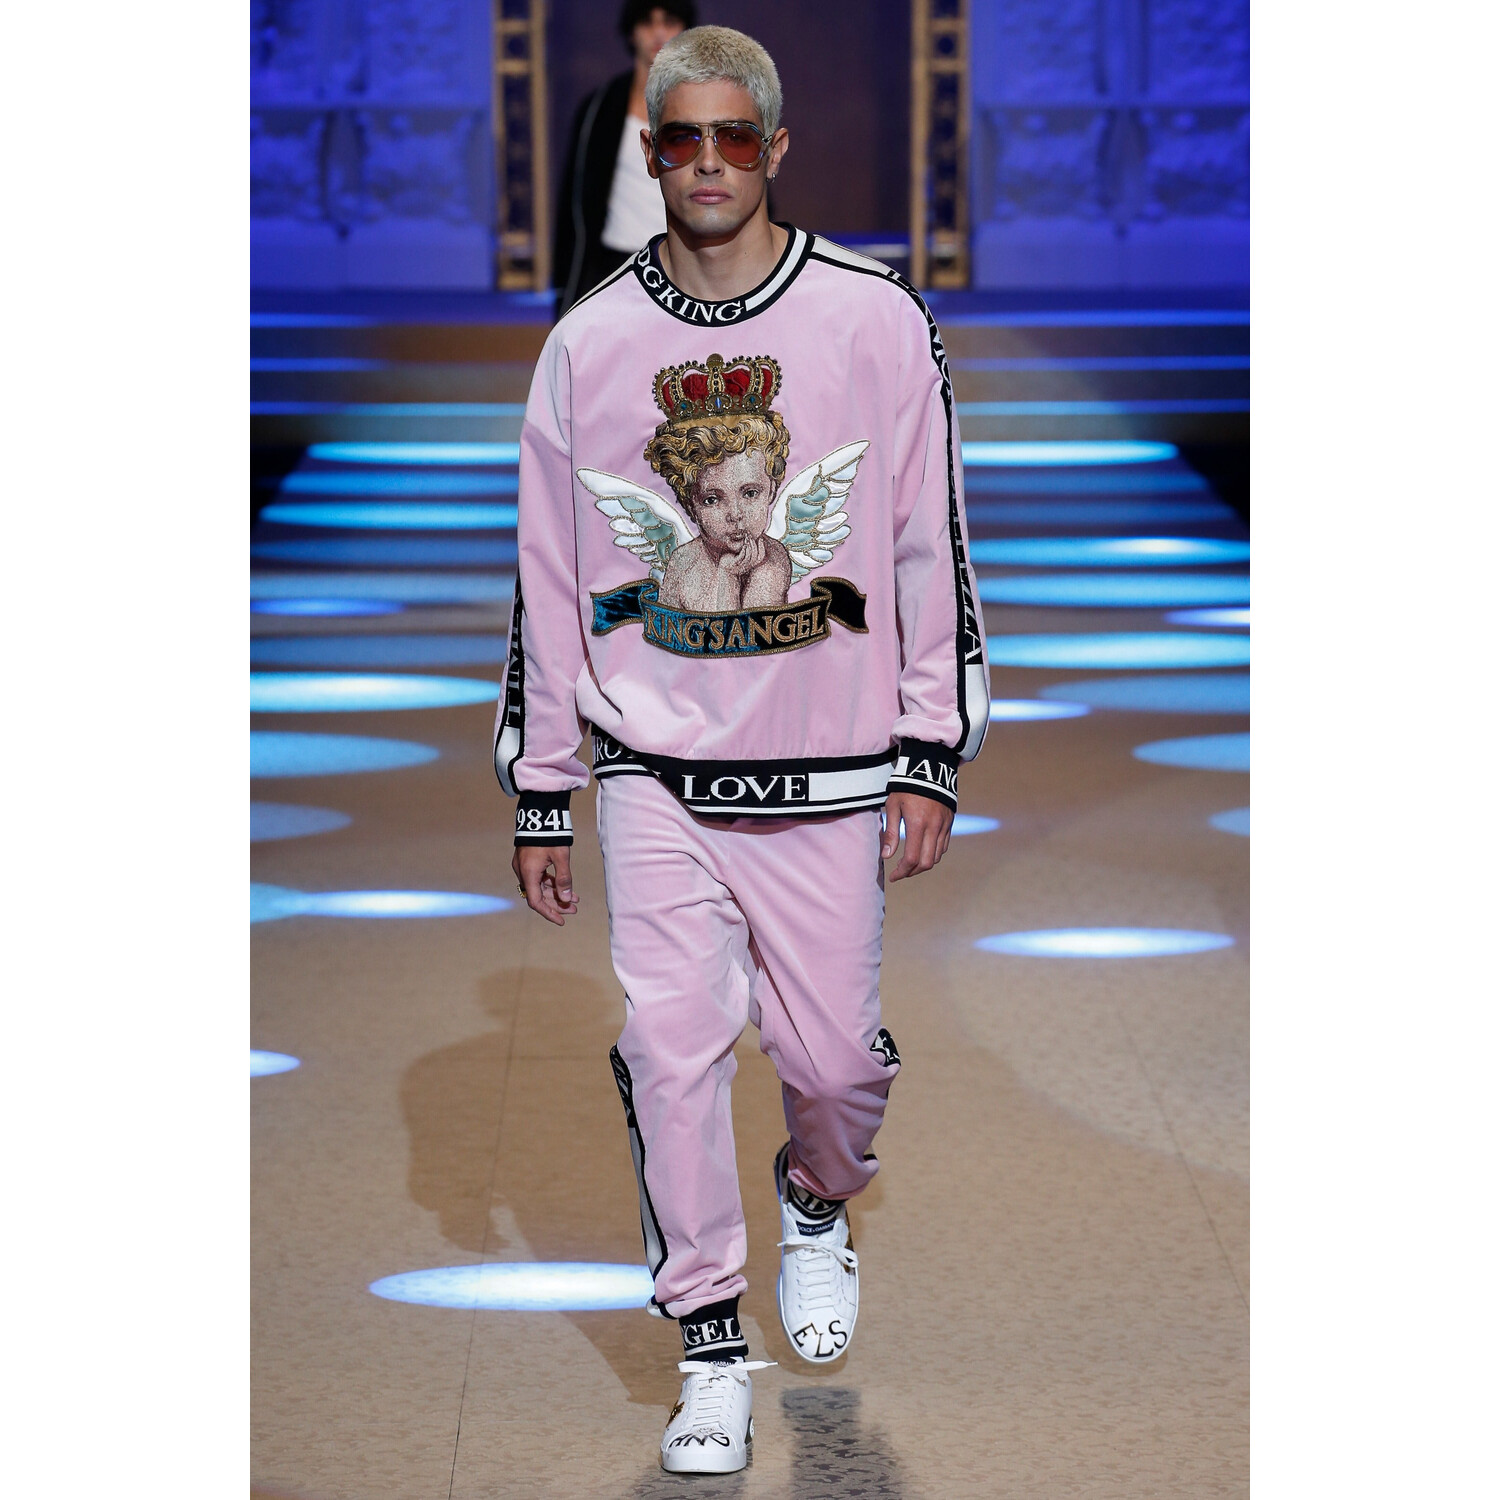 Фото Dolce & Gabbana FALL 2018 MENSWEAR Milan MFW коллекция Дорльче Габбана осень 2018 мужская неделя моды в Милане Mainstyles